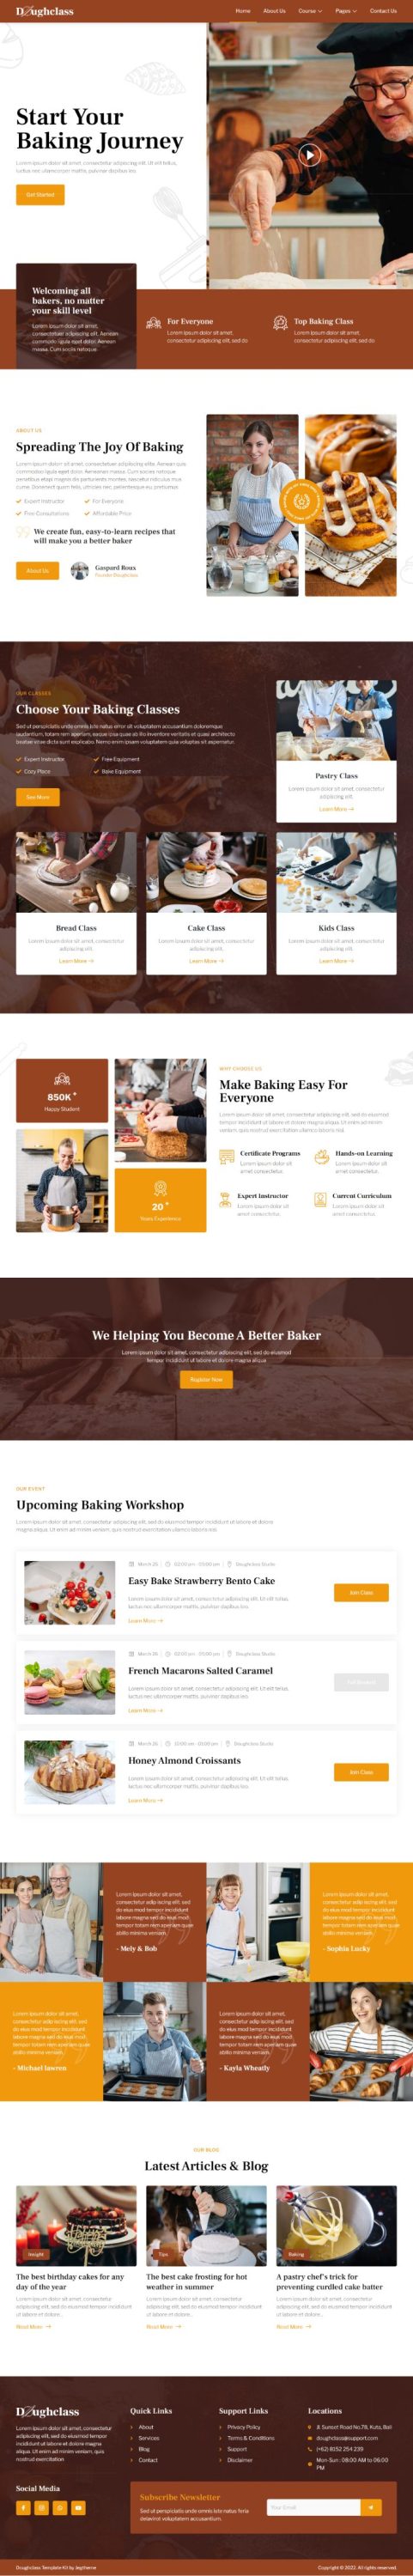 Mẫu website giới thiệu tiệm bánh - Doughclass